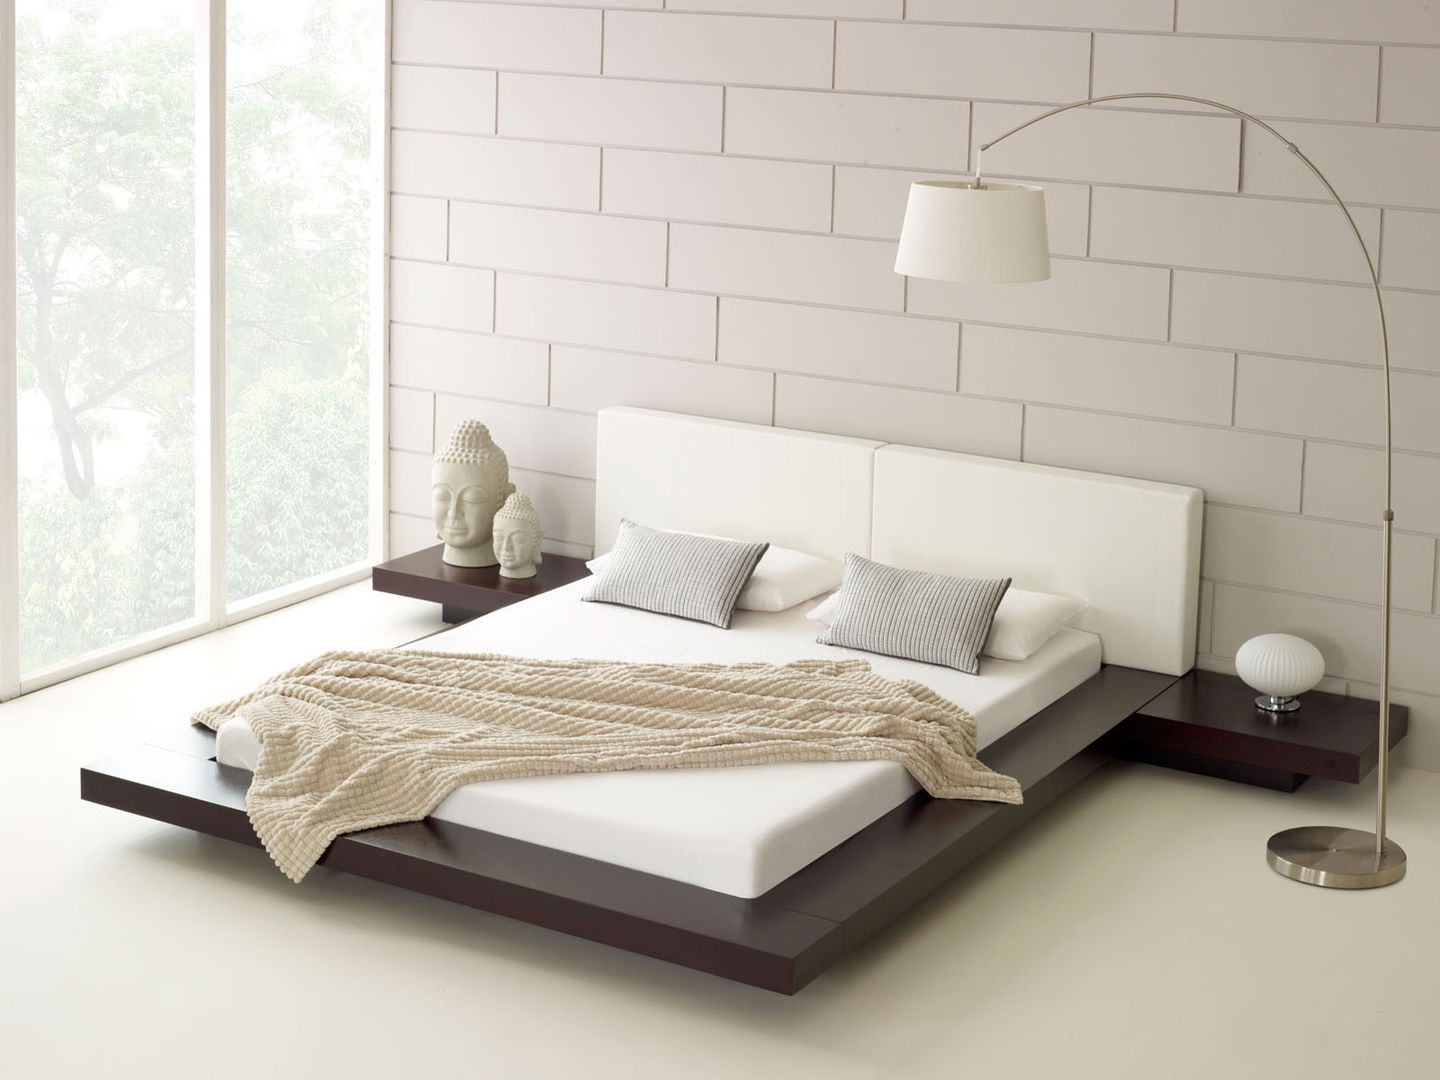 Harmonia Walnut Bed homify Dormitorios de estilo moderno Camas y cabeceros